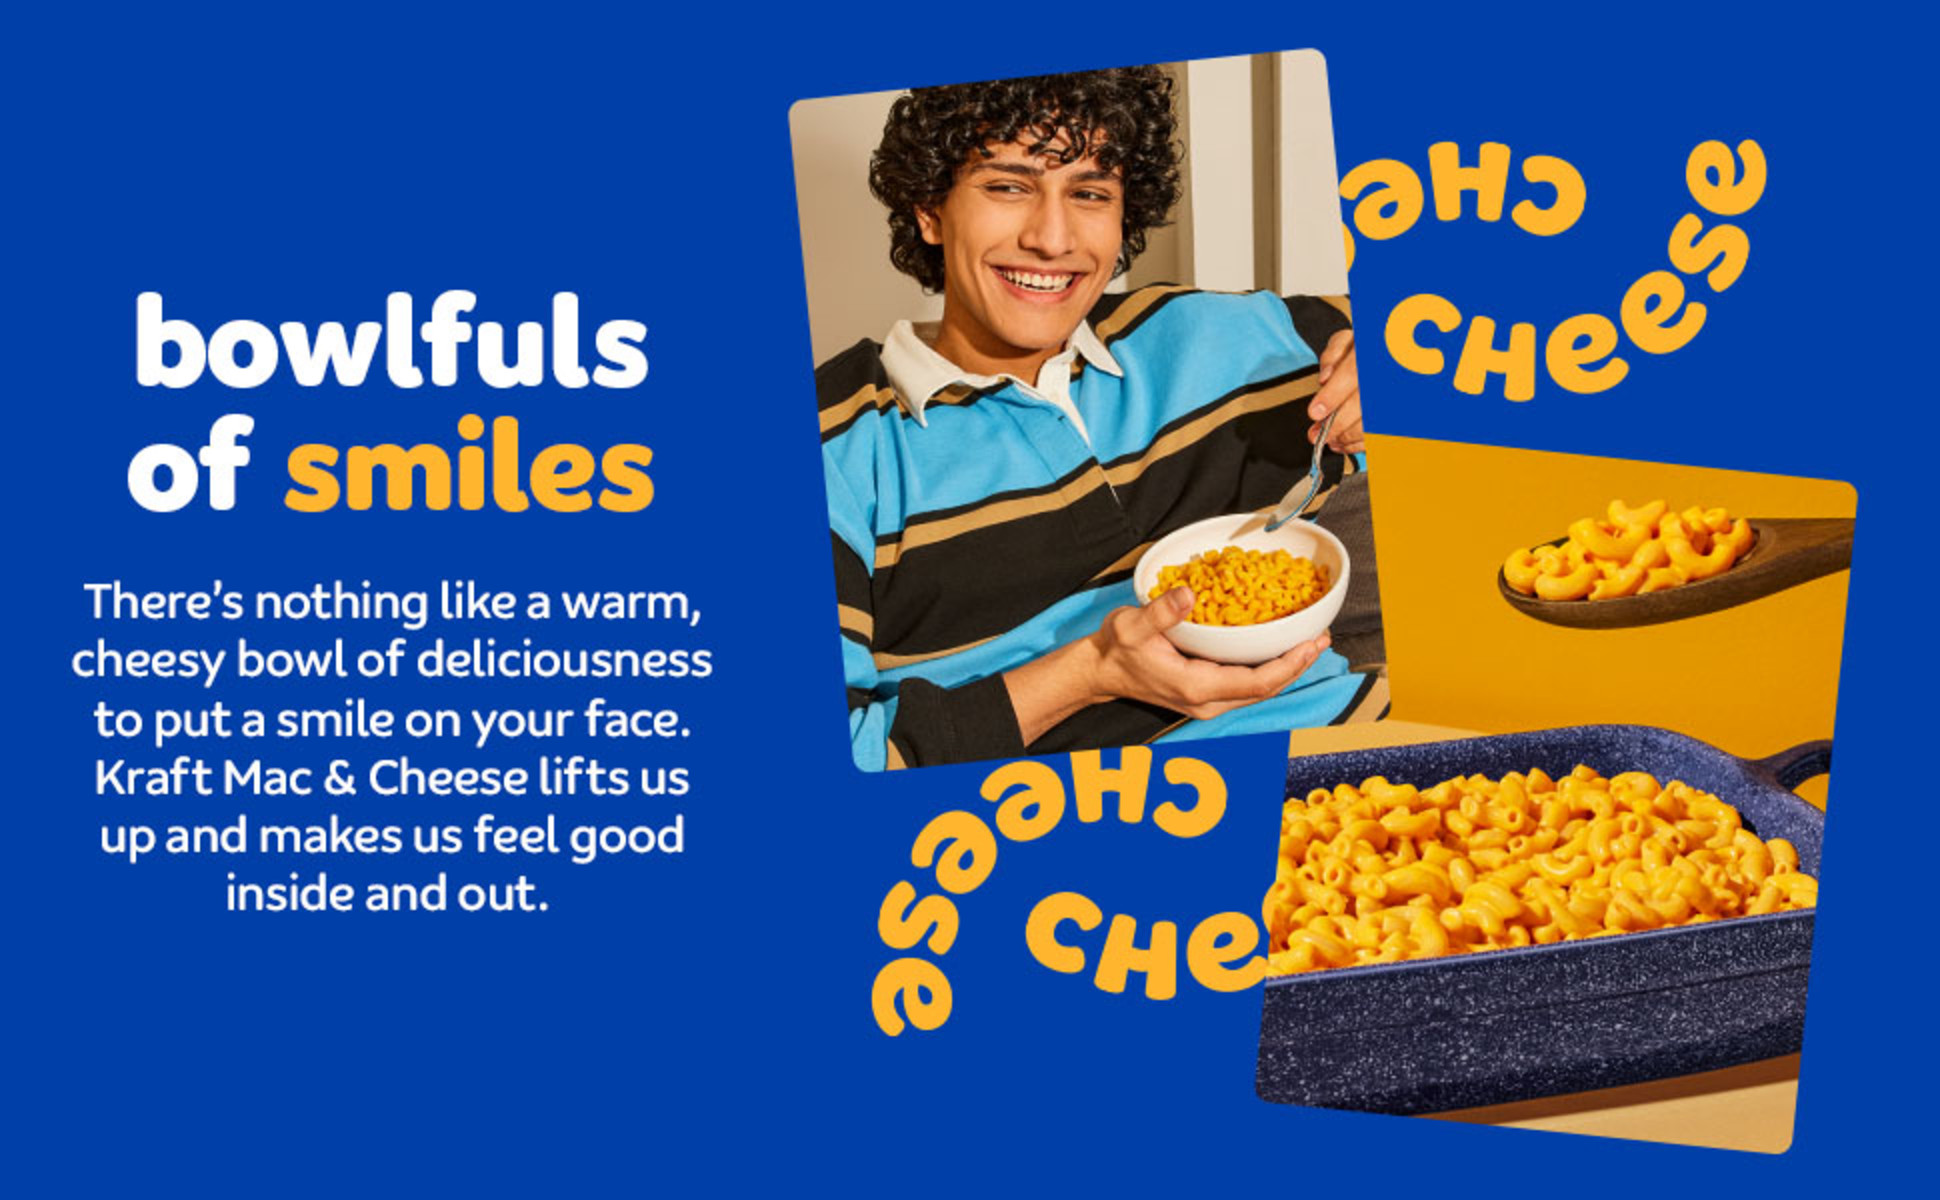 Kraft Spirals Macaroni & Cheese Dinner